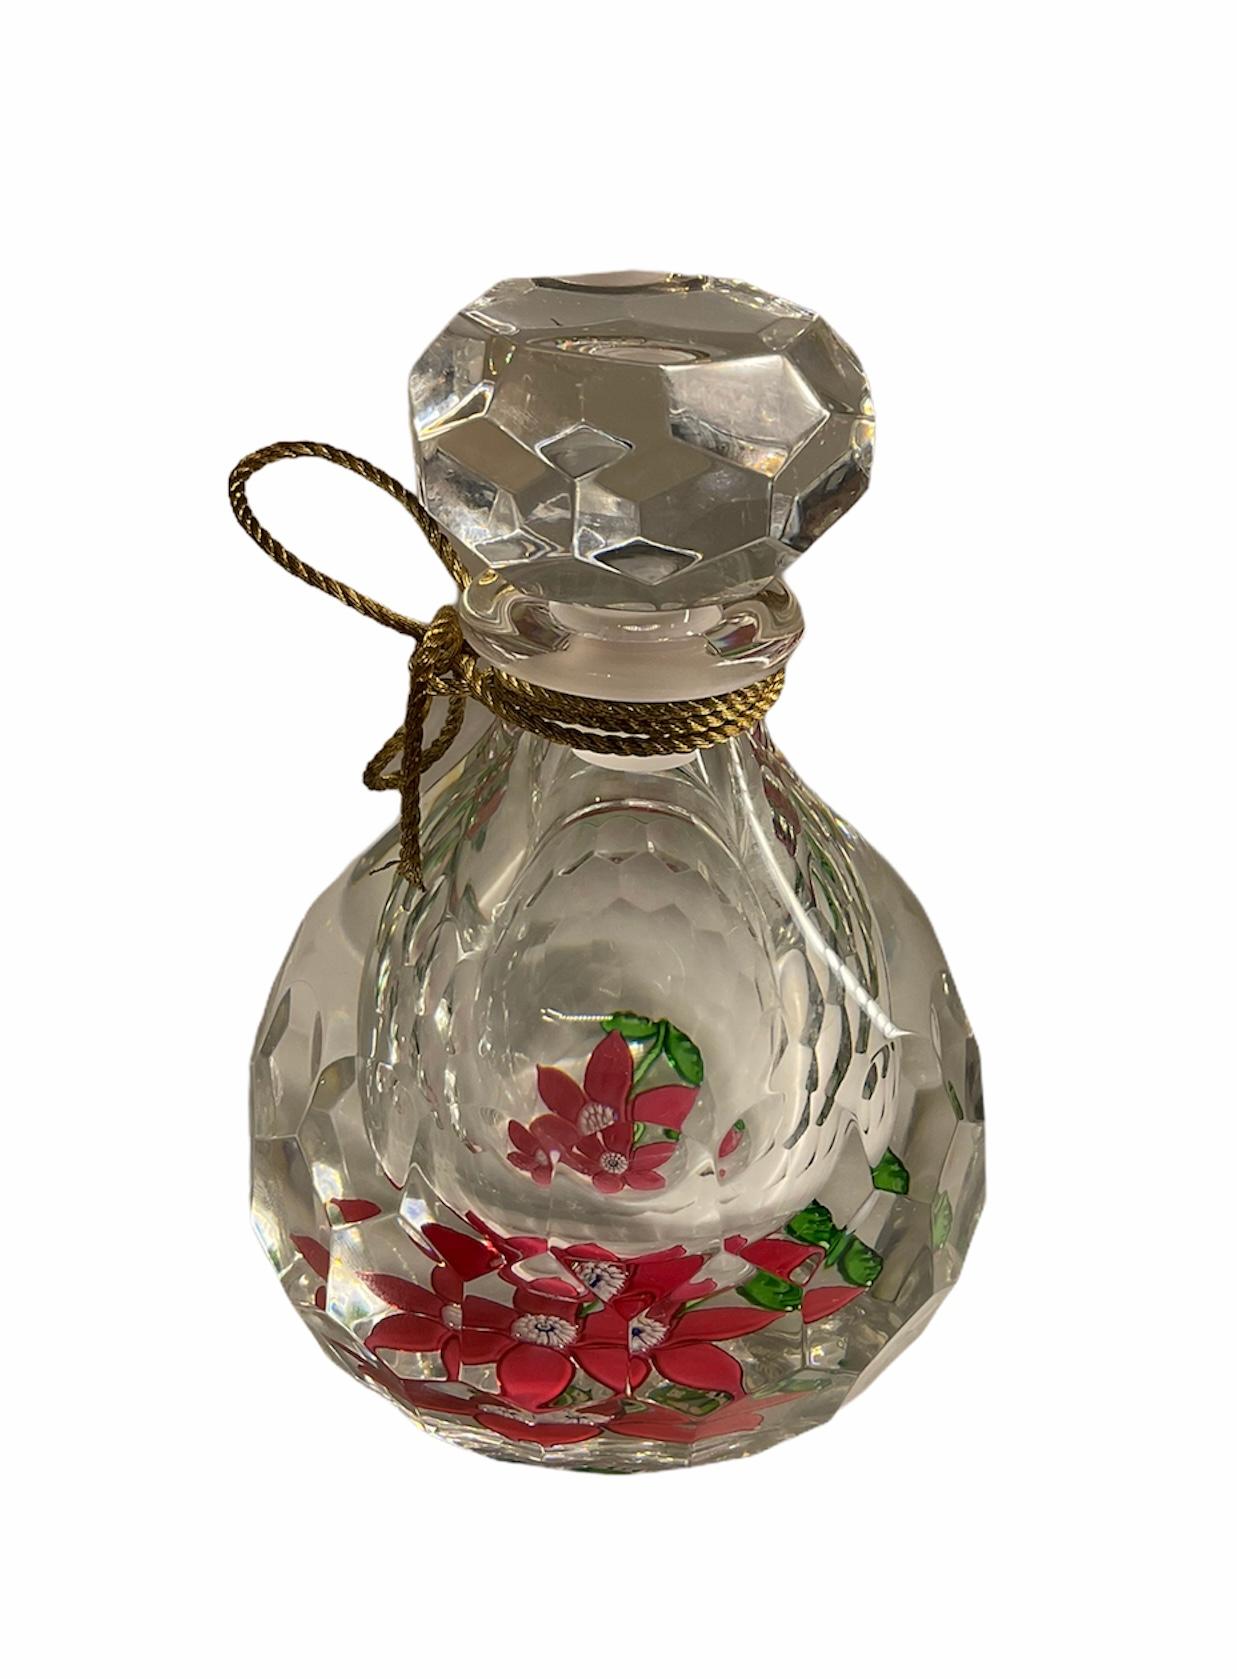 Crystal Cristal Saint Louis Ivoire de Balmain Collectible Perfume Decanter/Bottle For Sale